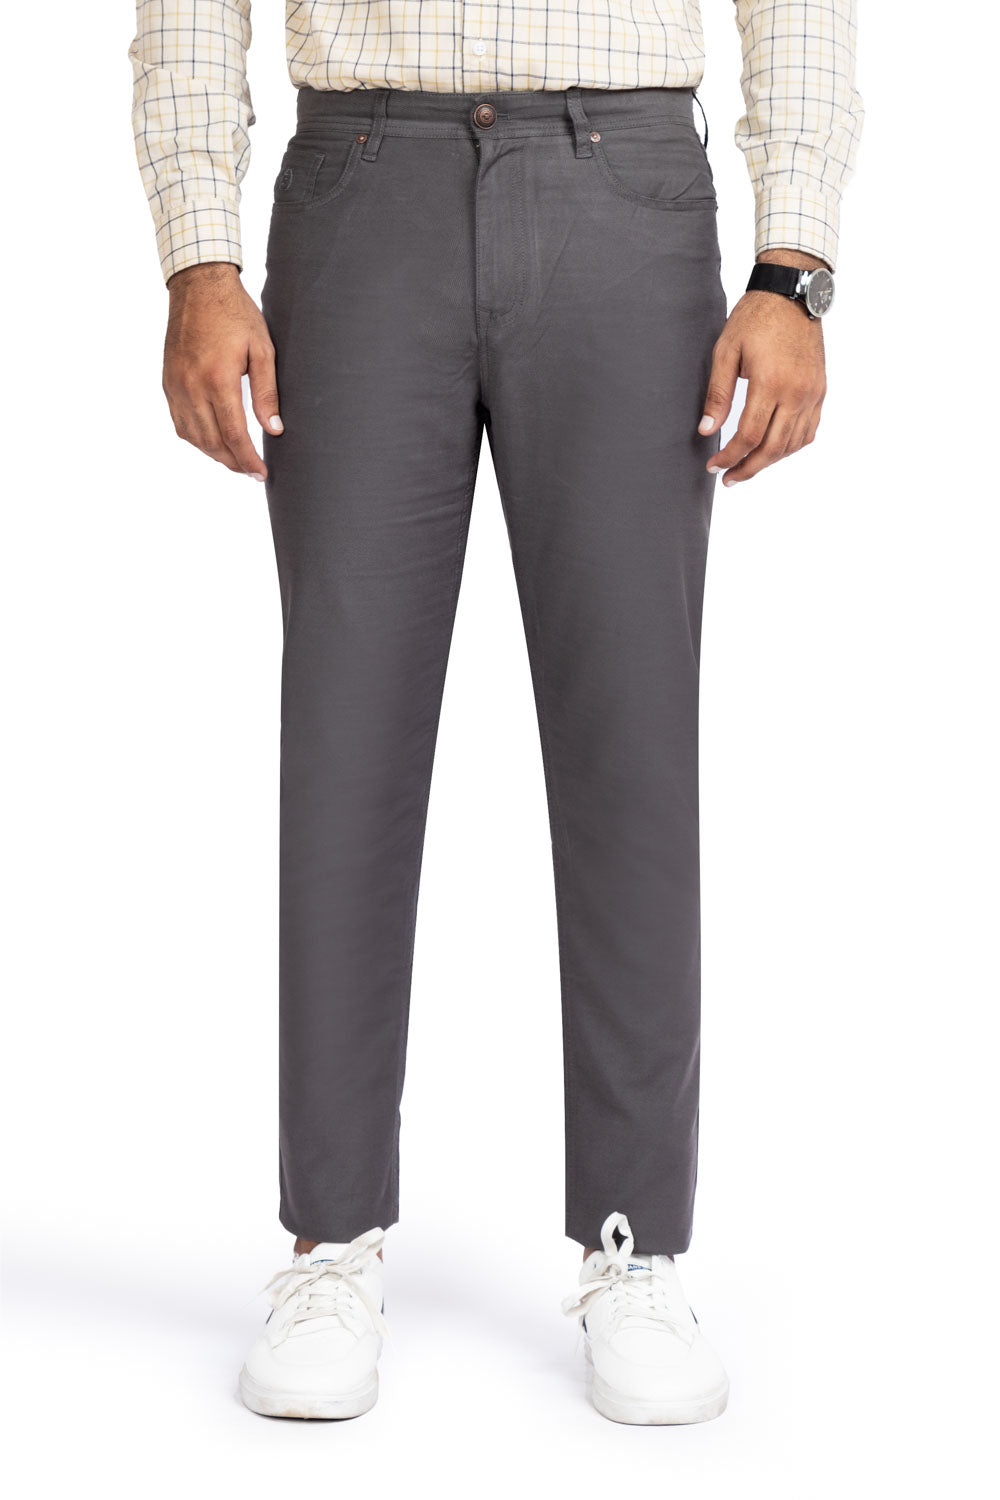 Grey Basic 5 Pocket Pant